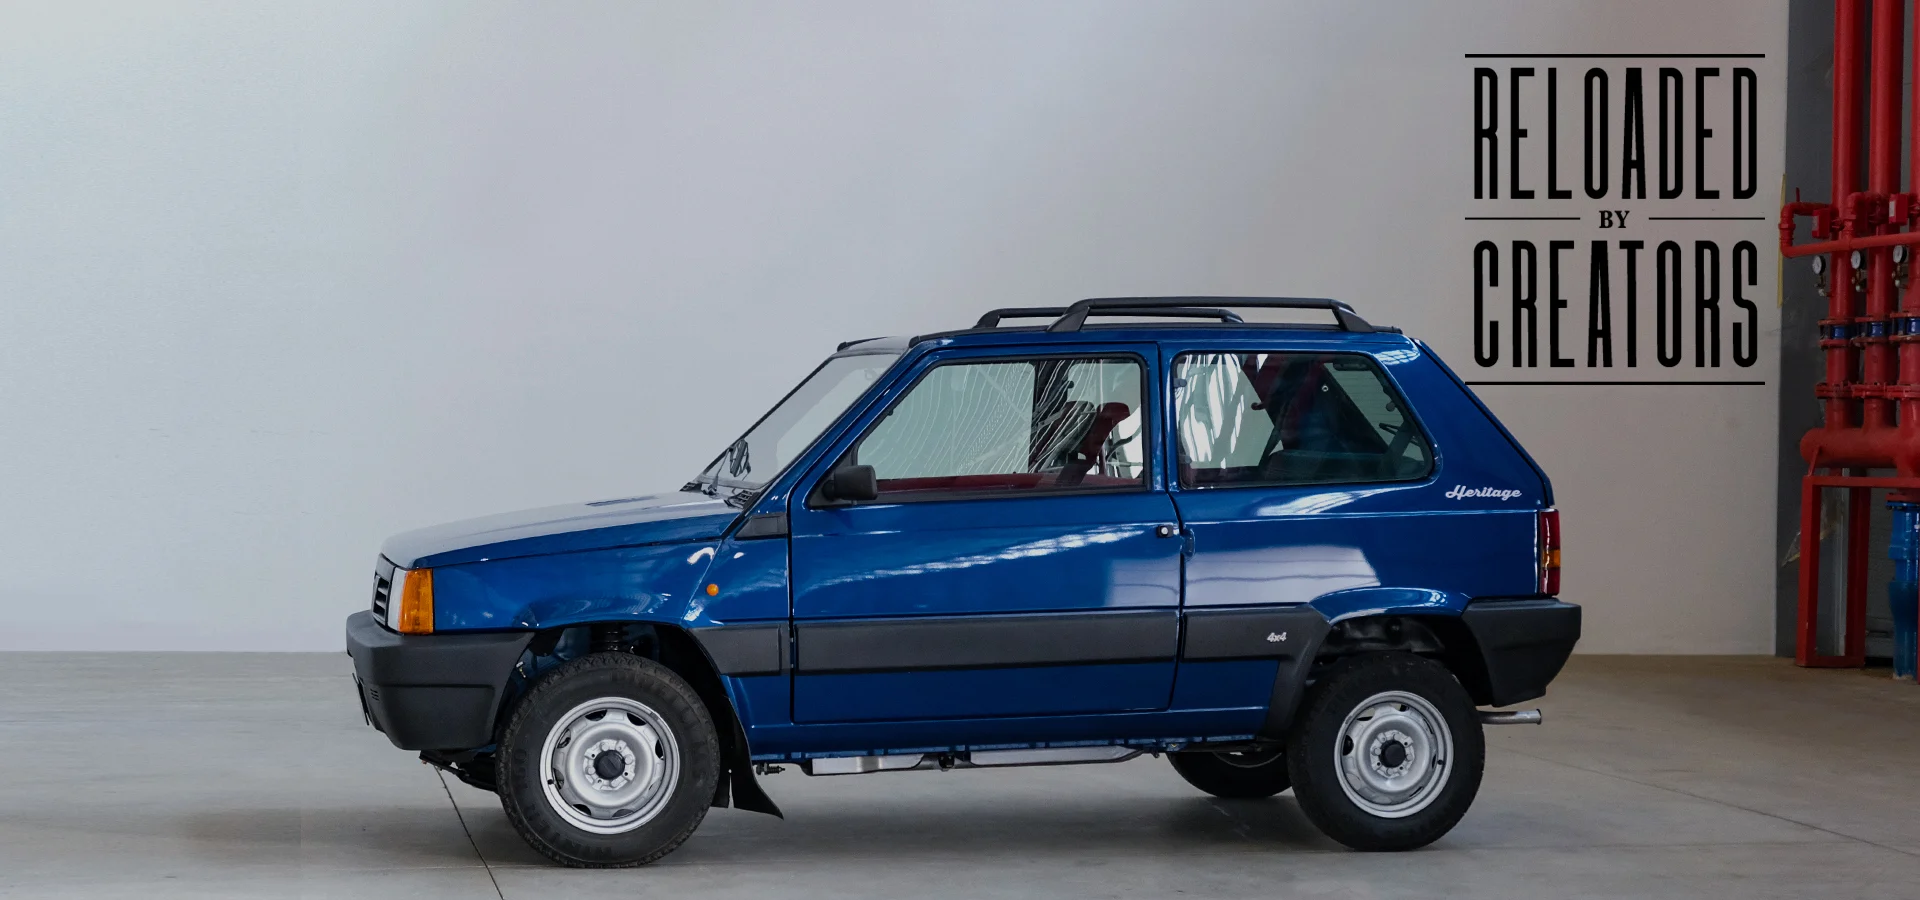 Fiat Panda 4×4, 40 anni di avventure al limite.